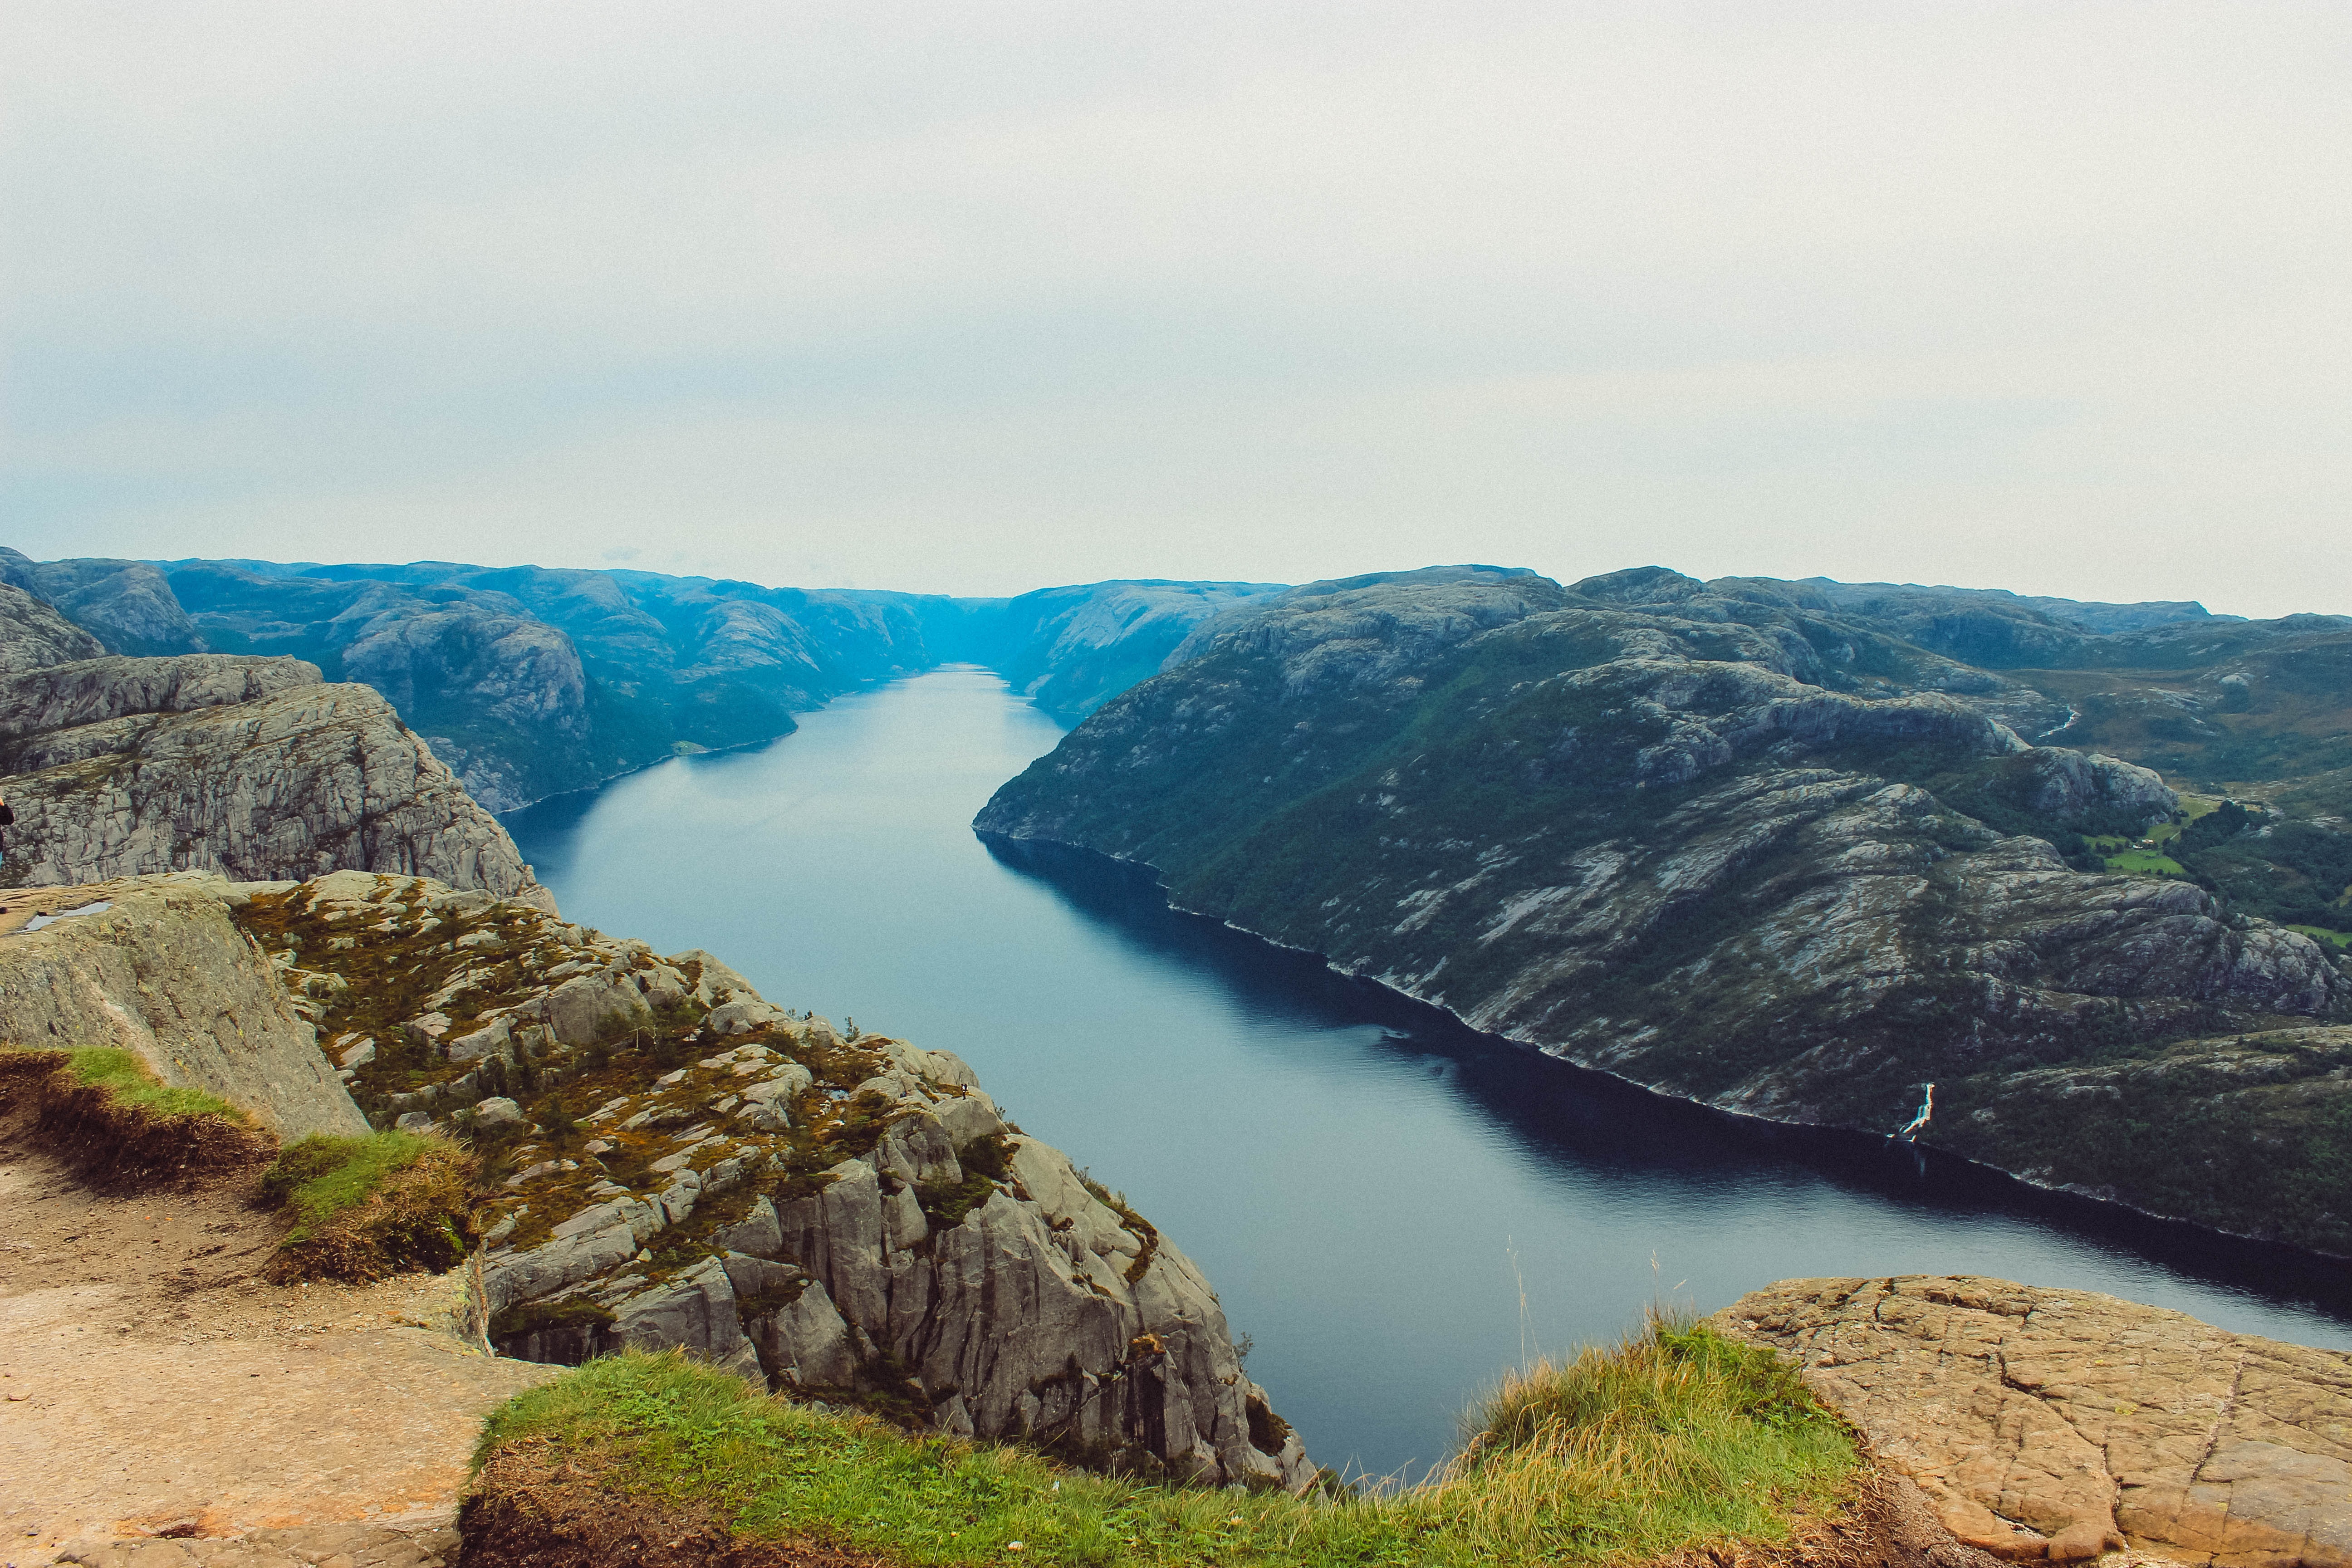 Preikestolen/The Pulpit Rock, Trekking Places In Norway